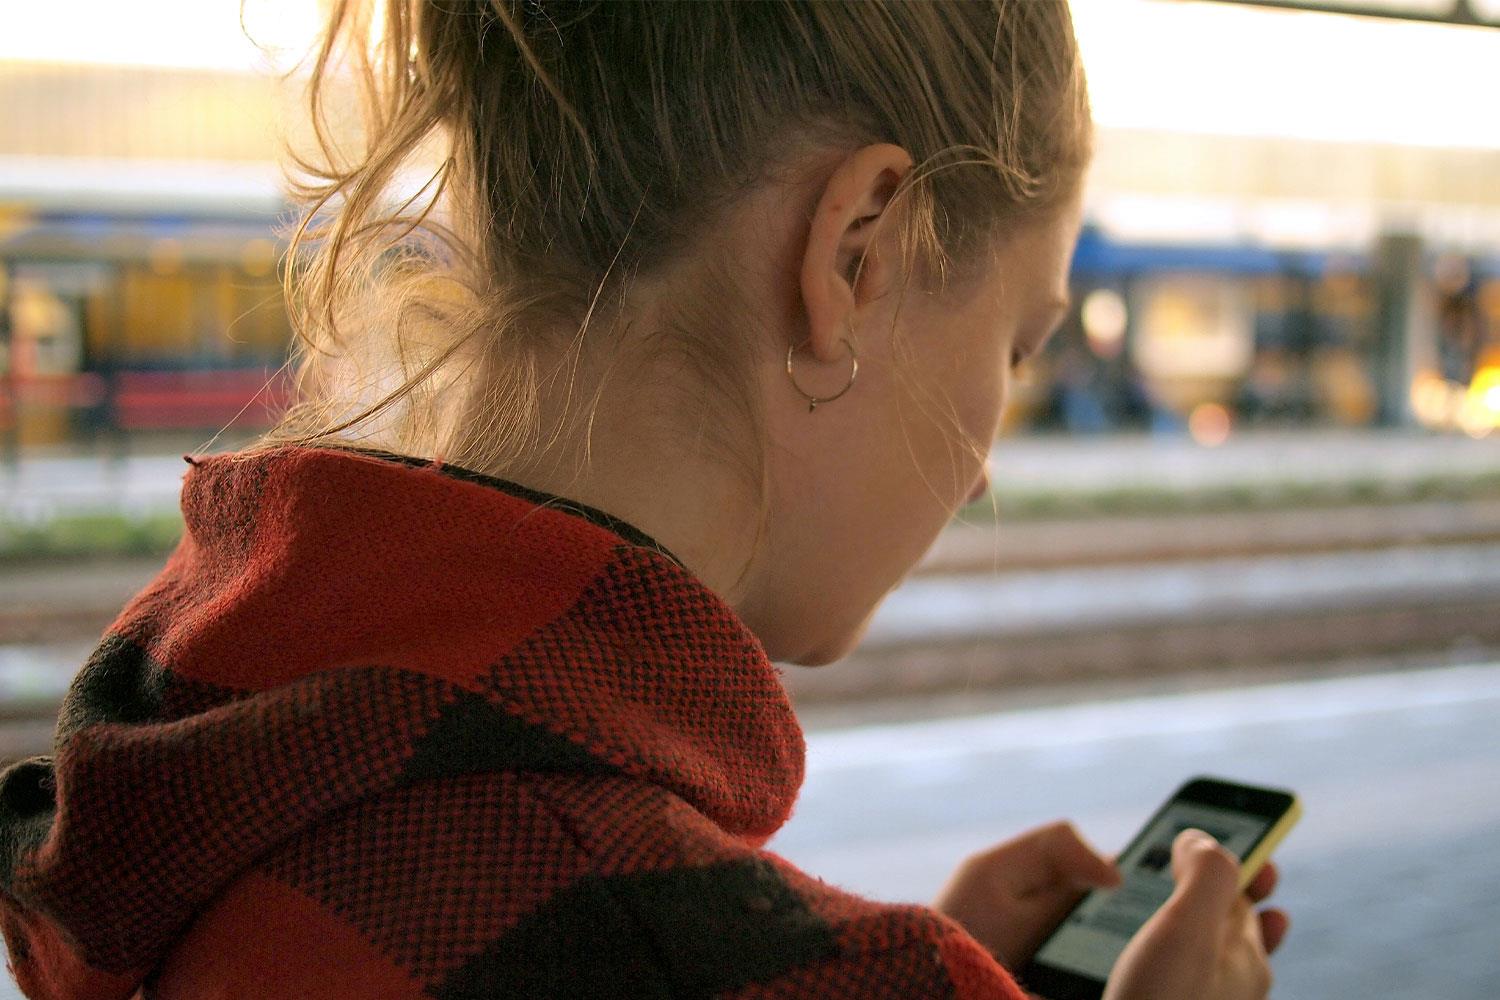 Eine junge Frau steht am Bahnsteig und Blickt auf ihr Smartphone